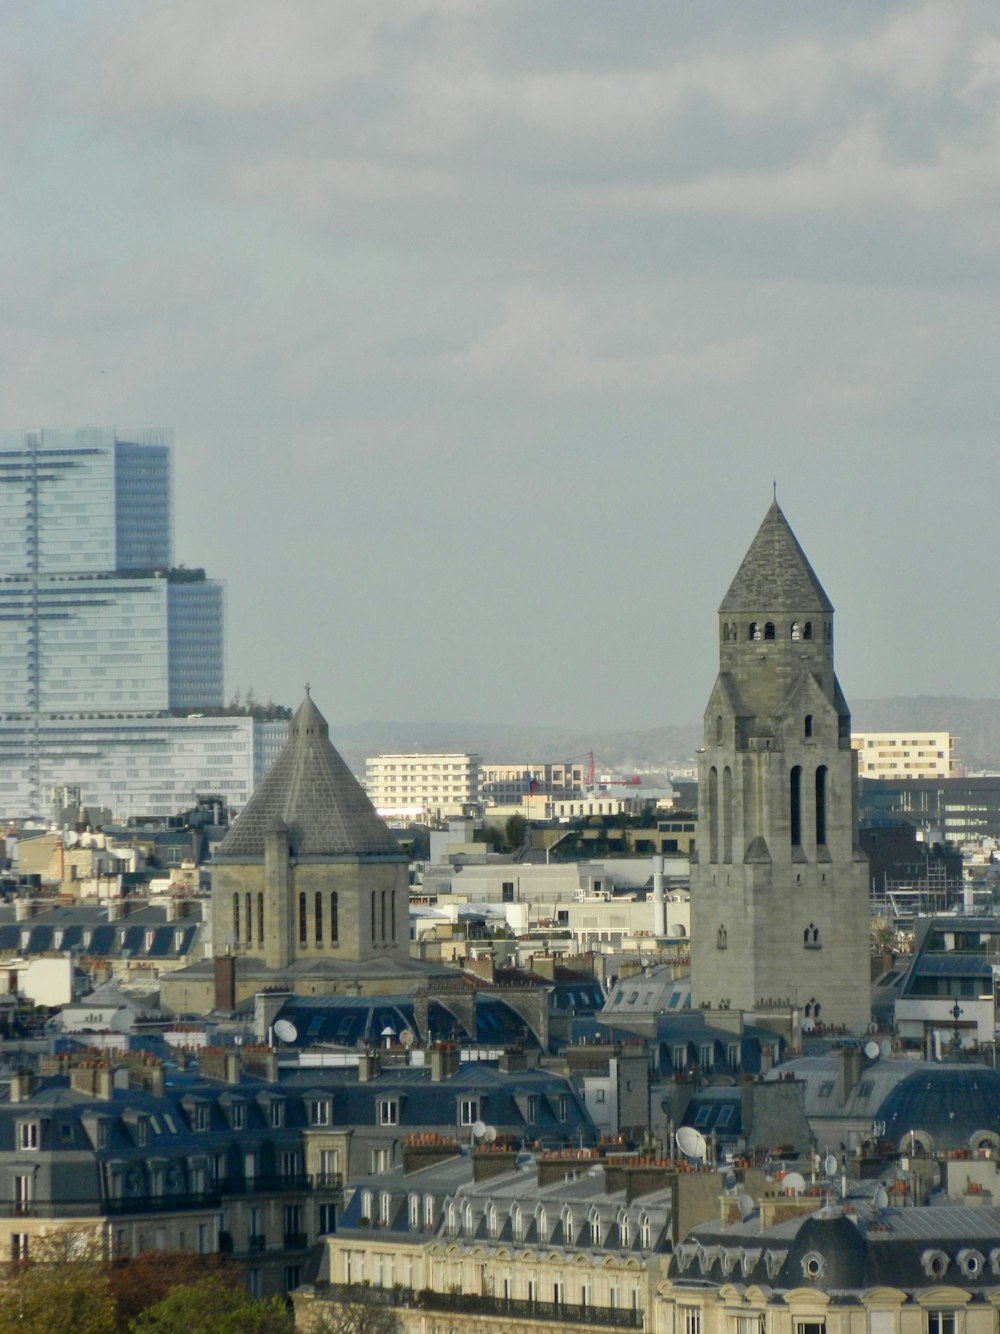 Una veduta di una città con alti edifici e una torre dell'orologio